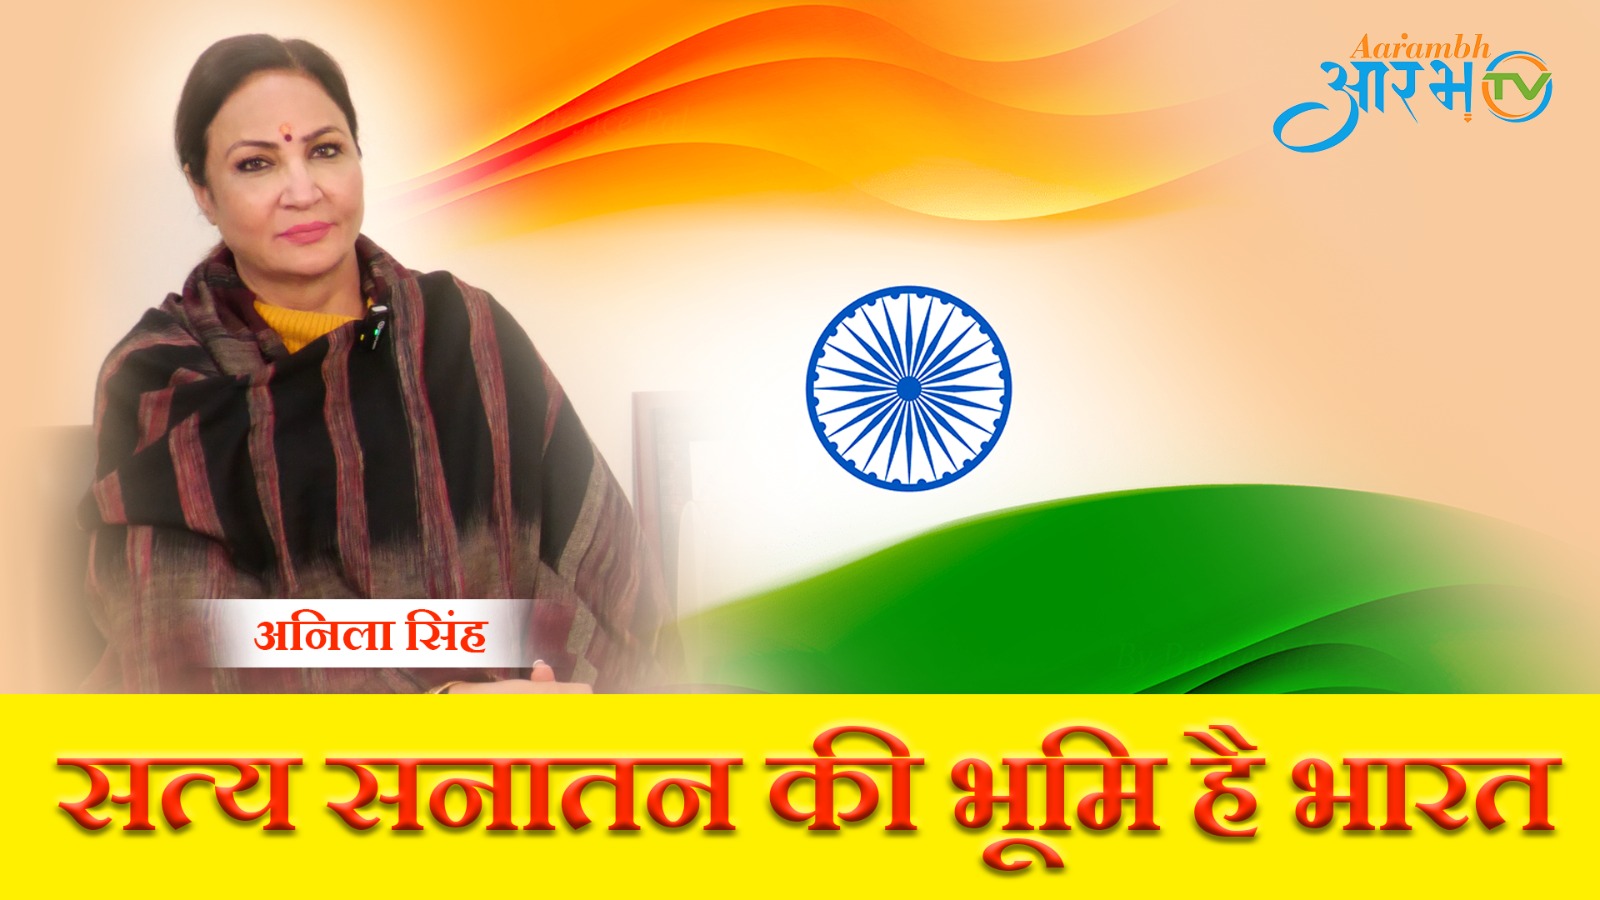 सत्य सनातन की भूमि है भारत | Anila Singh | Spokesperson BJP | Aarambhtv